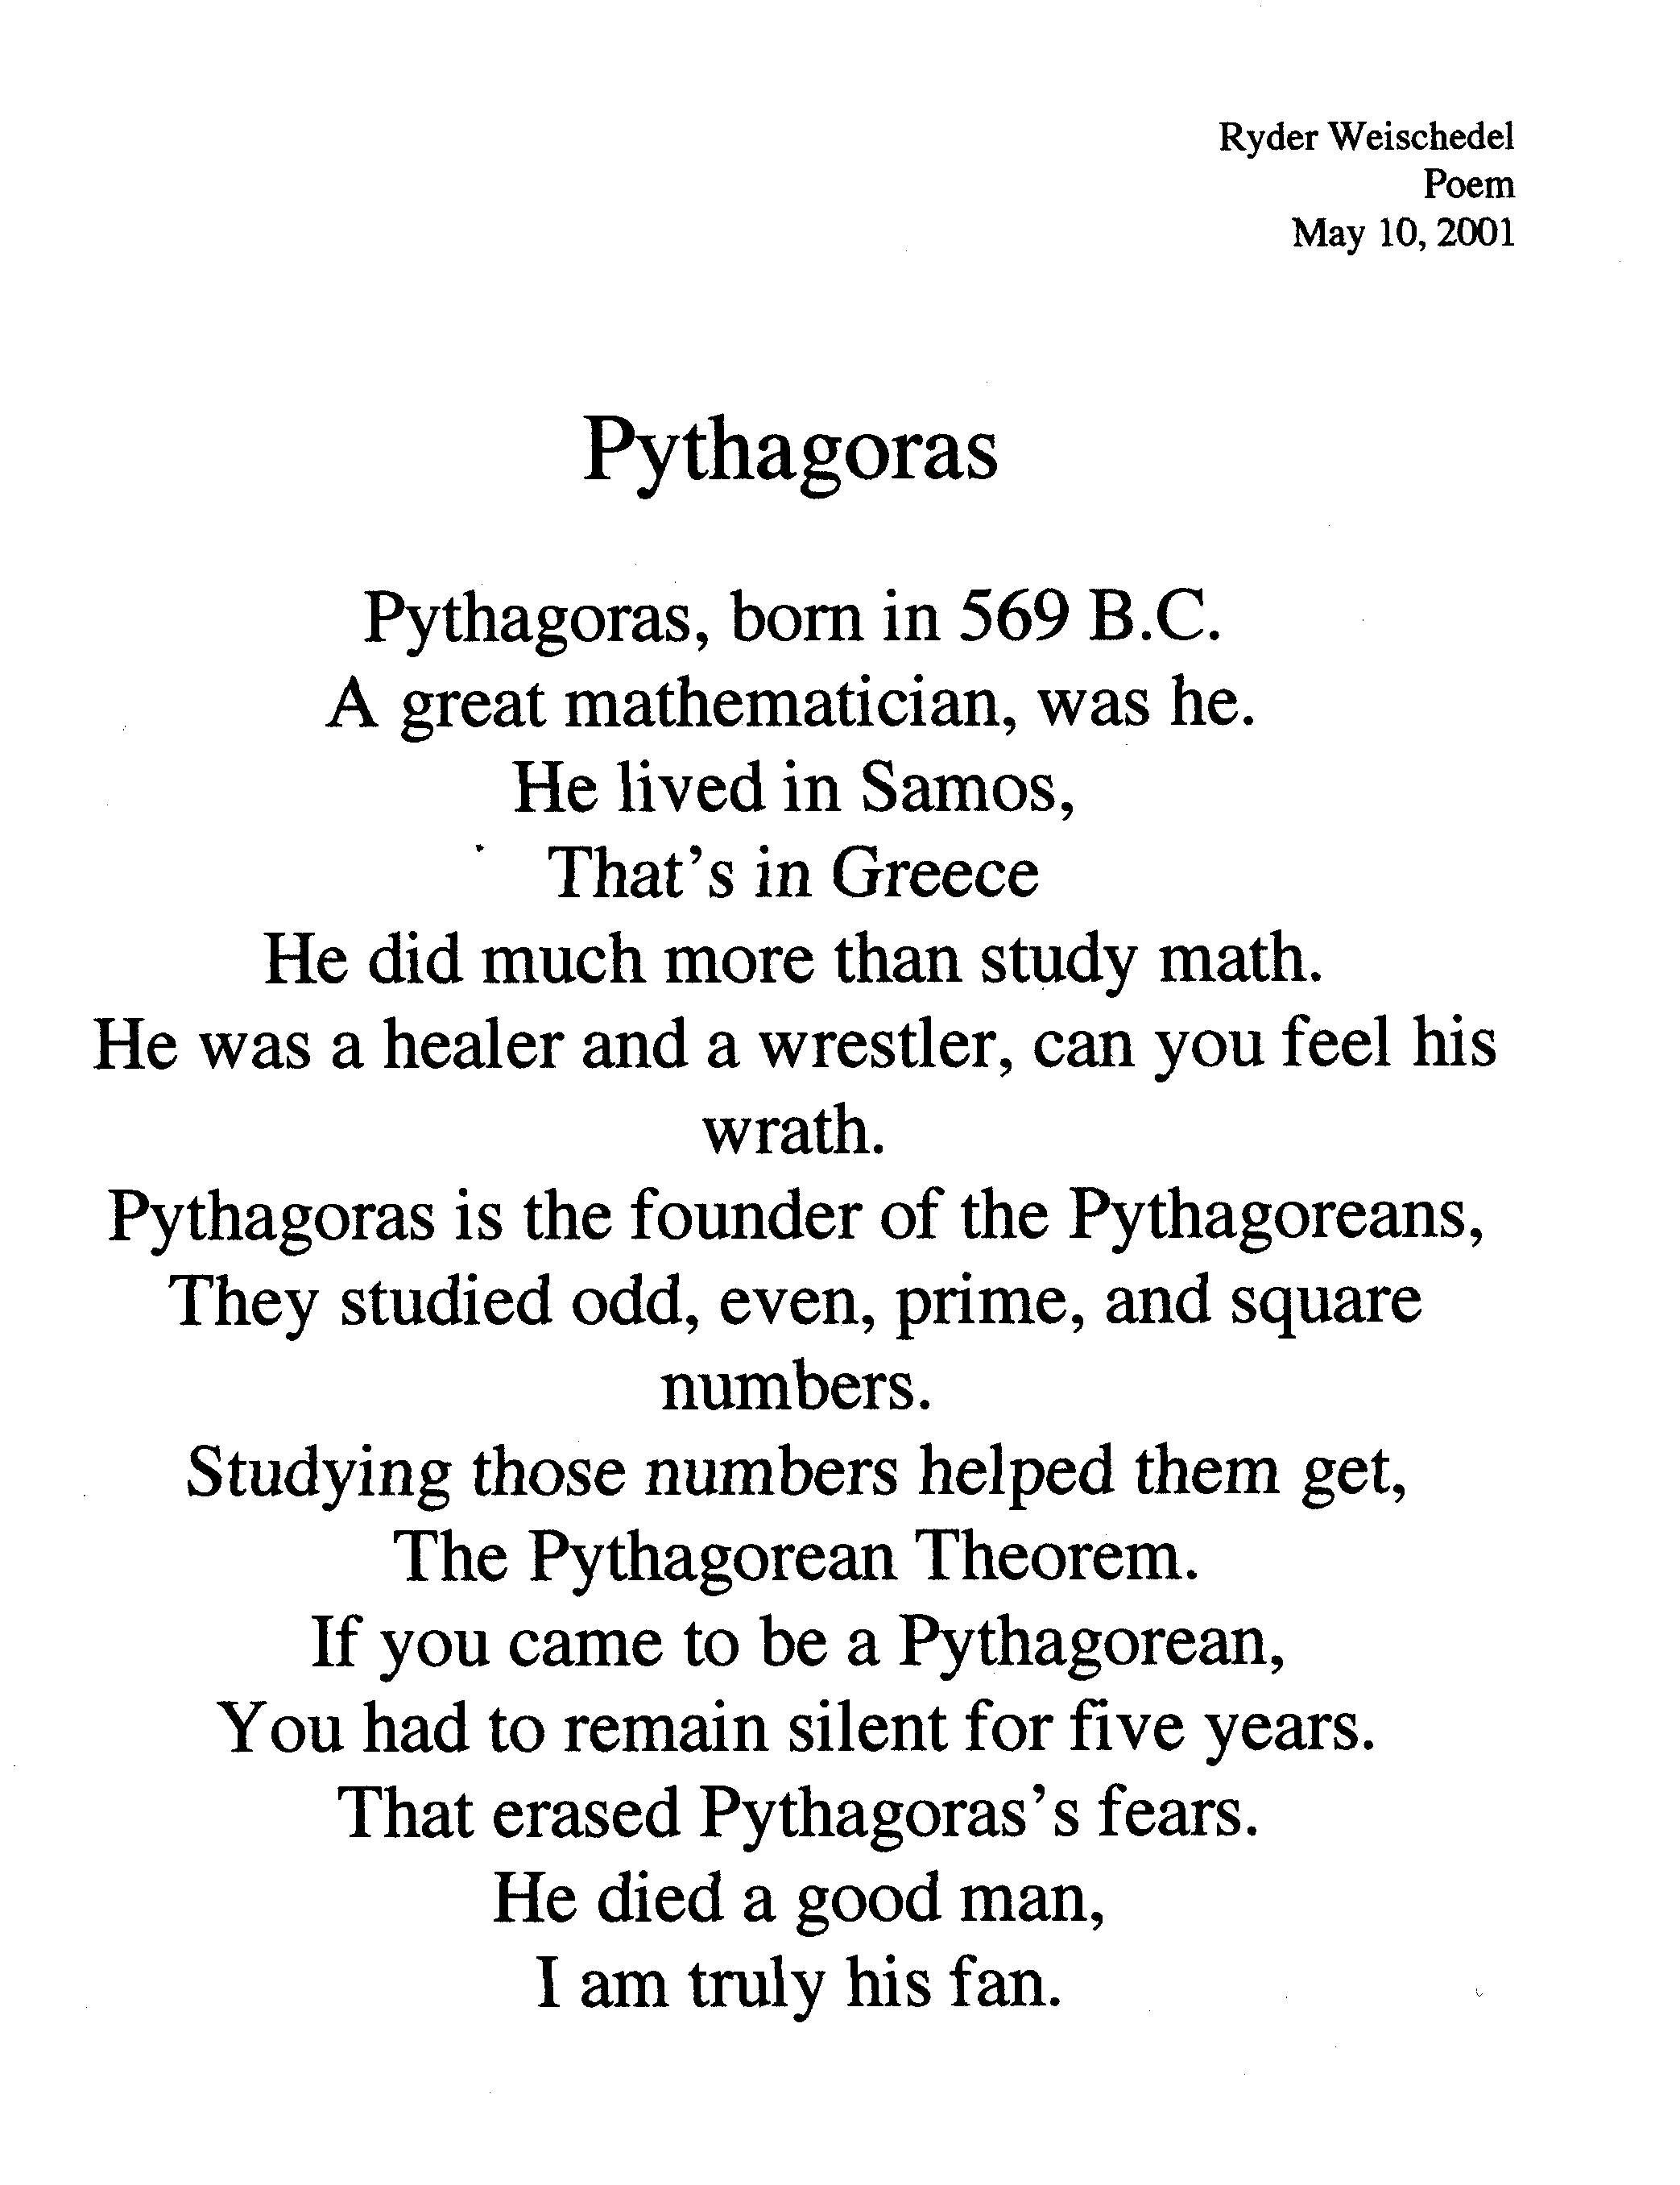 Pythagoras poem